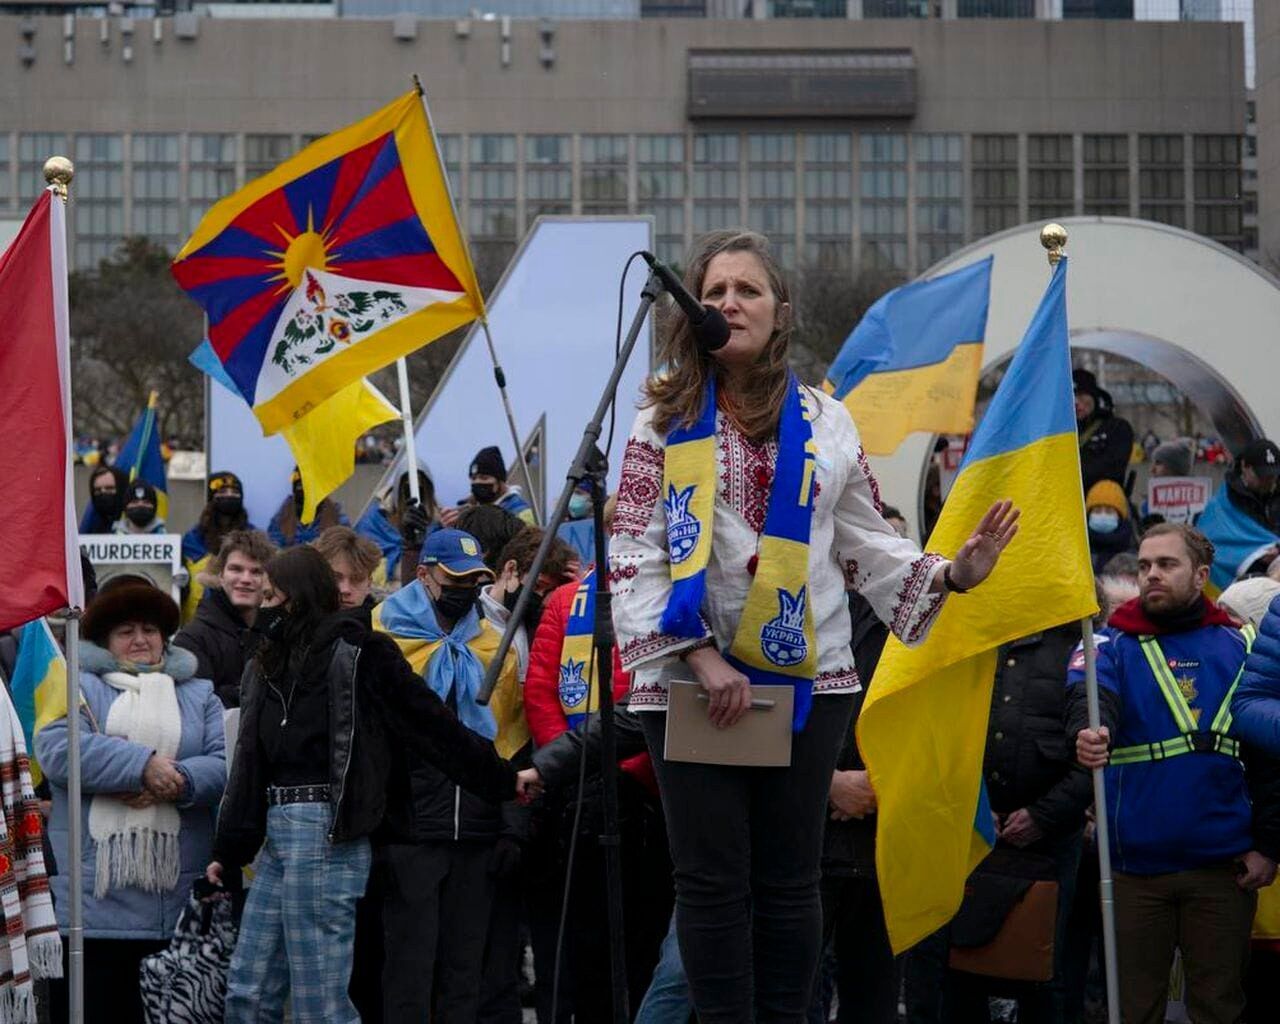 Двічі міністр канадського уряду українка Христя Фріланд: світ має бути вдячний Україні за її мужність